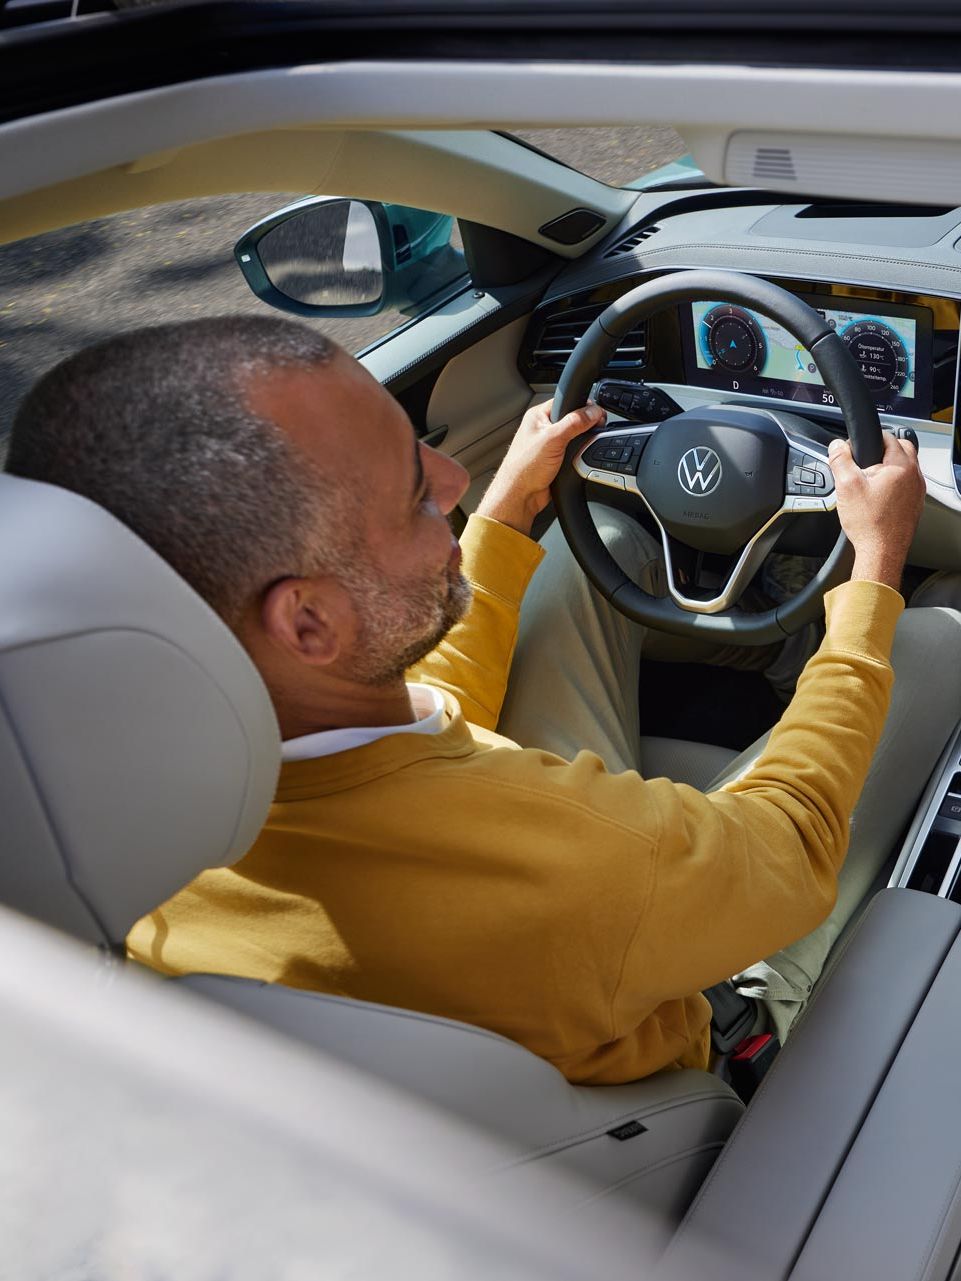 Blick von oben durch das geöffnete optionale Schiebedach des VW Passat, wo ein Mann mit beiden Händen am Lenkrad sitzt.